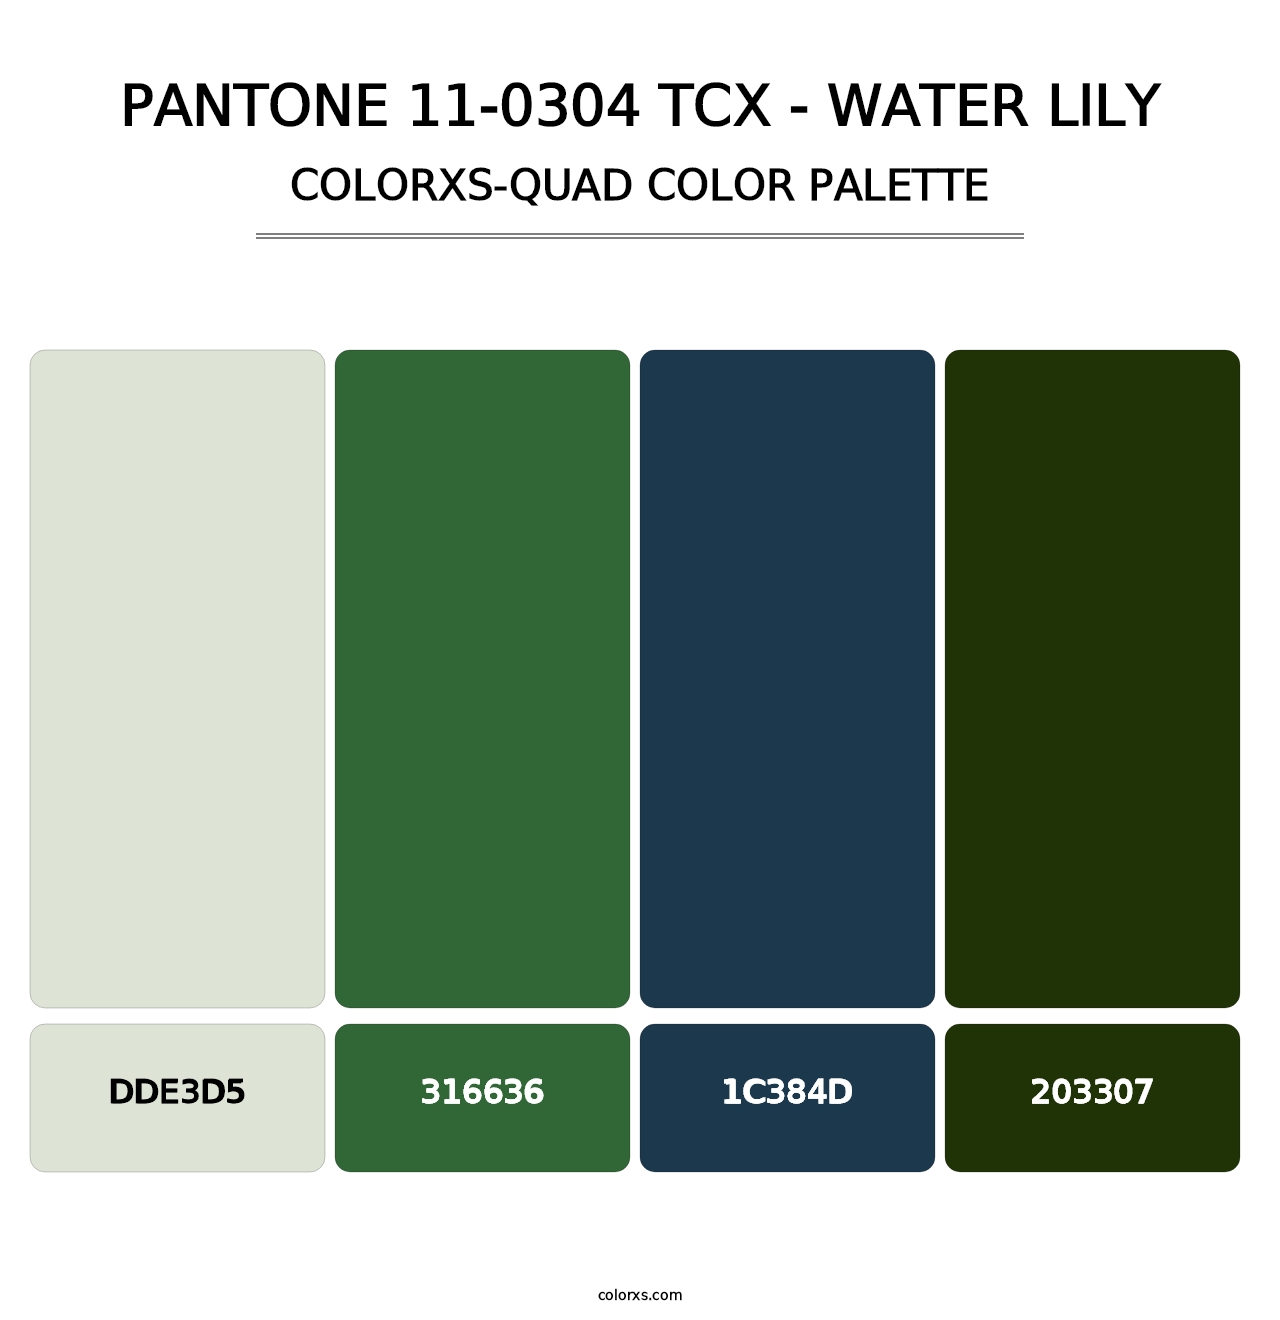 PANTONE 11-0304 TCX - Water Lily - Colorxs Quad Palette